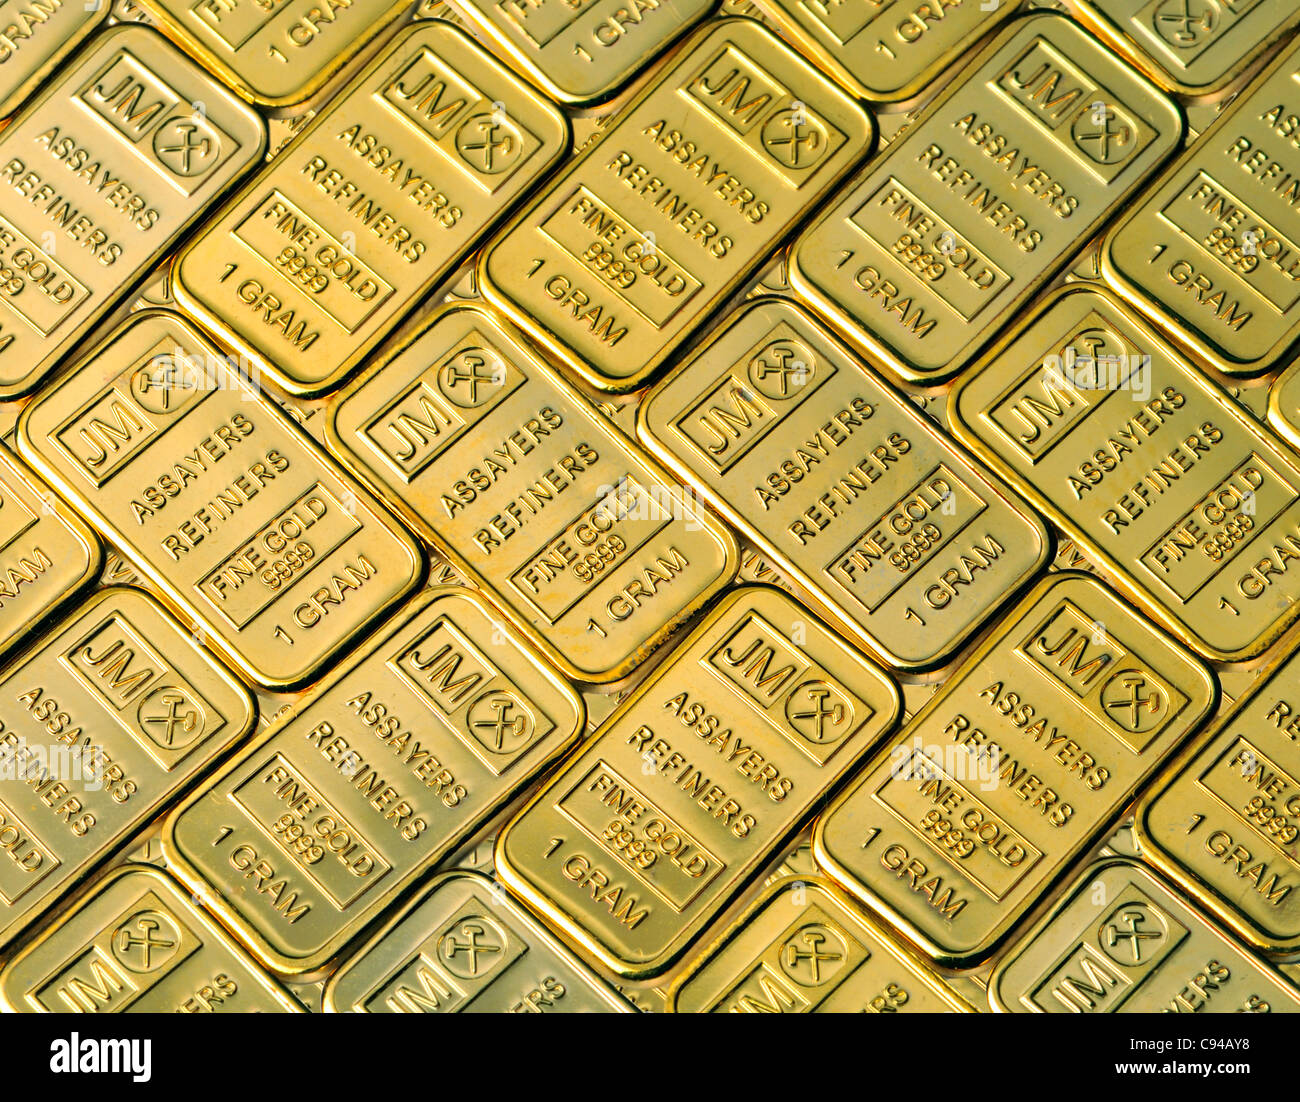 Gold Bullion dans 1g bars / lingots (répliques) plaqué or Banque D'Images